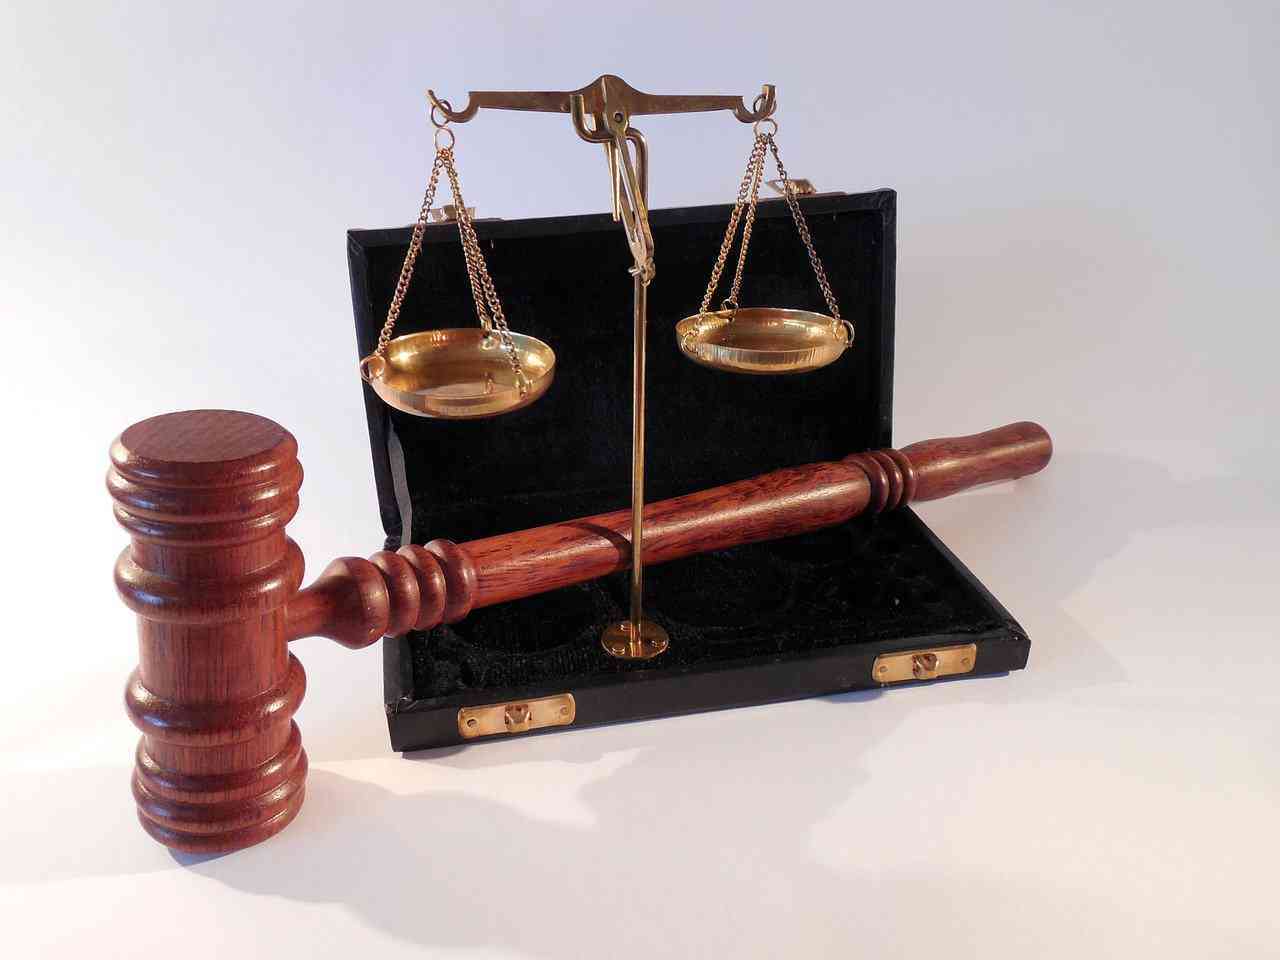 Ο Ρόλος των Δικαστηρίων στο Βυζάντιο και Μέσα για την Καταπολέμηση της Διαφθοράς